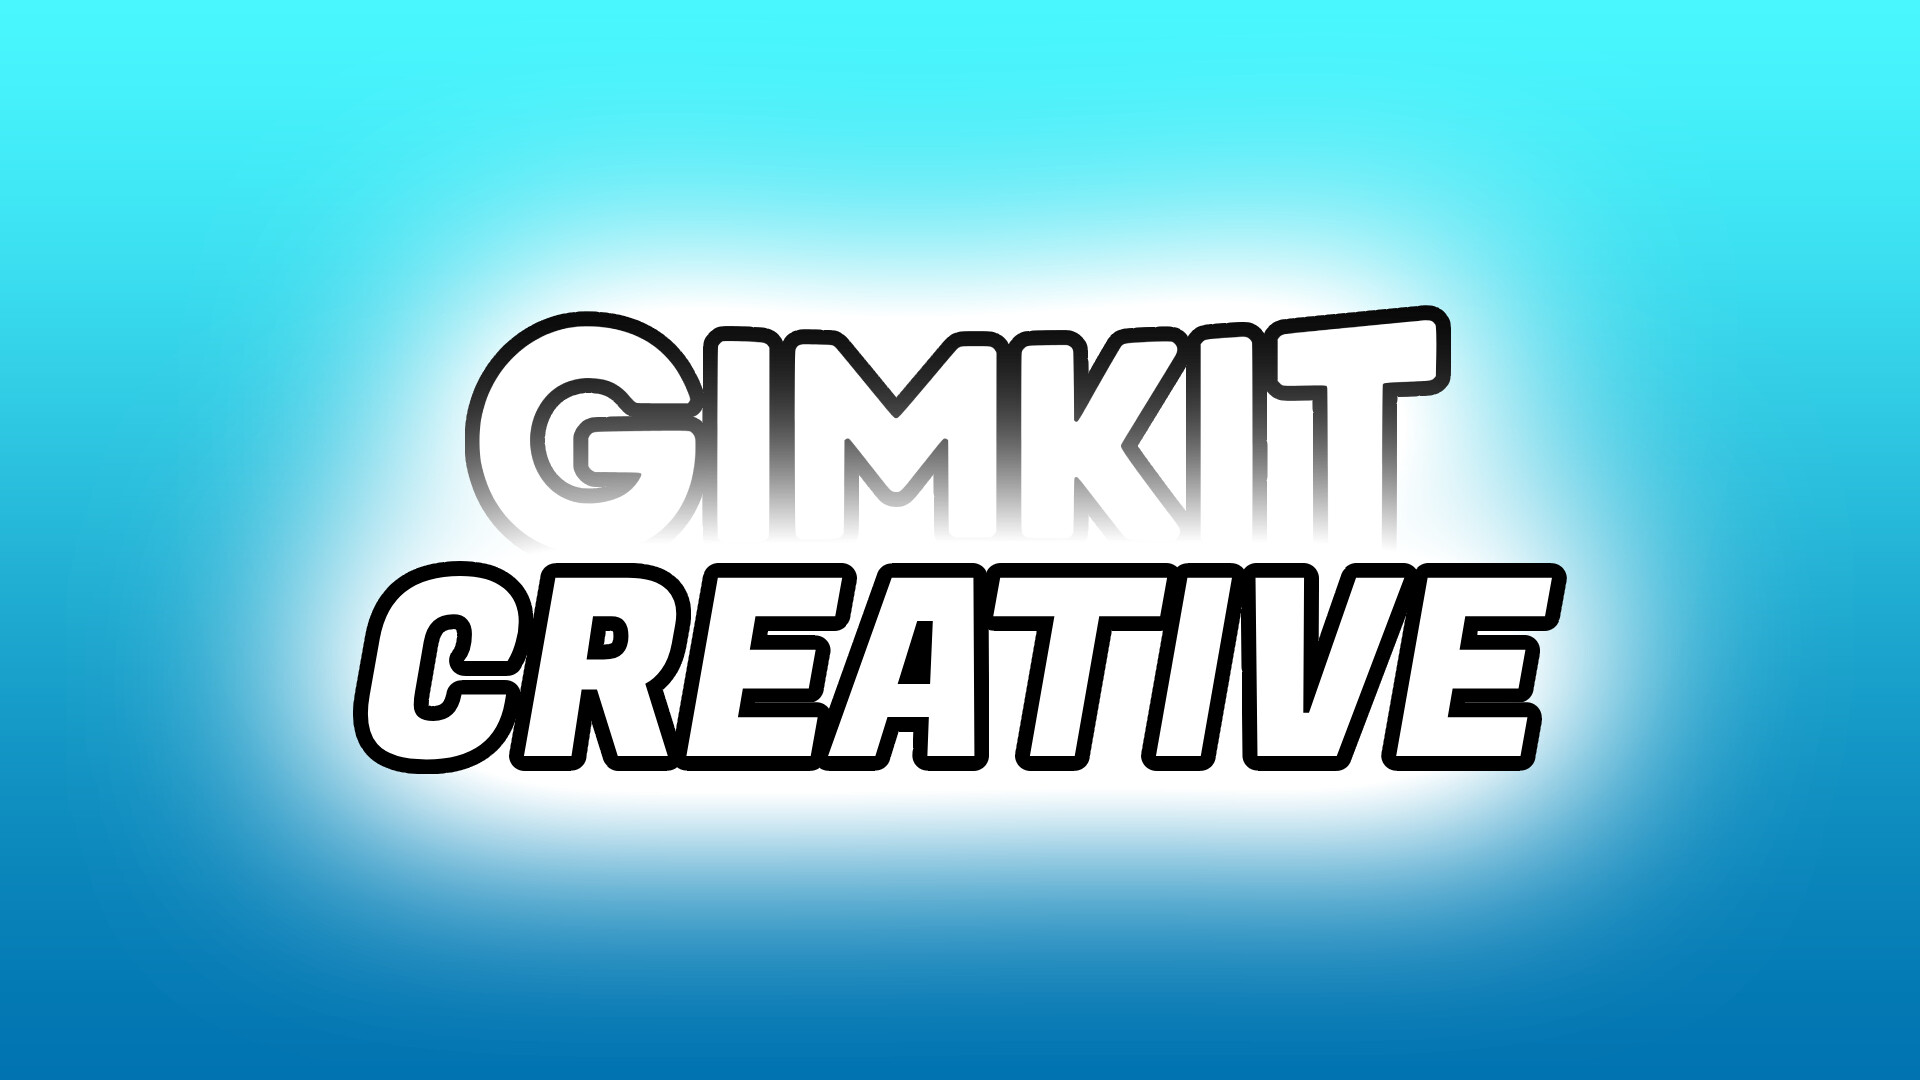 Help on making a gim - Help - Gimkit Creative